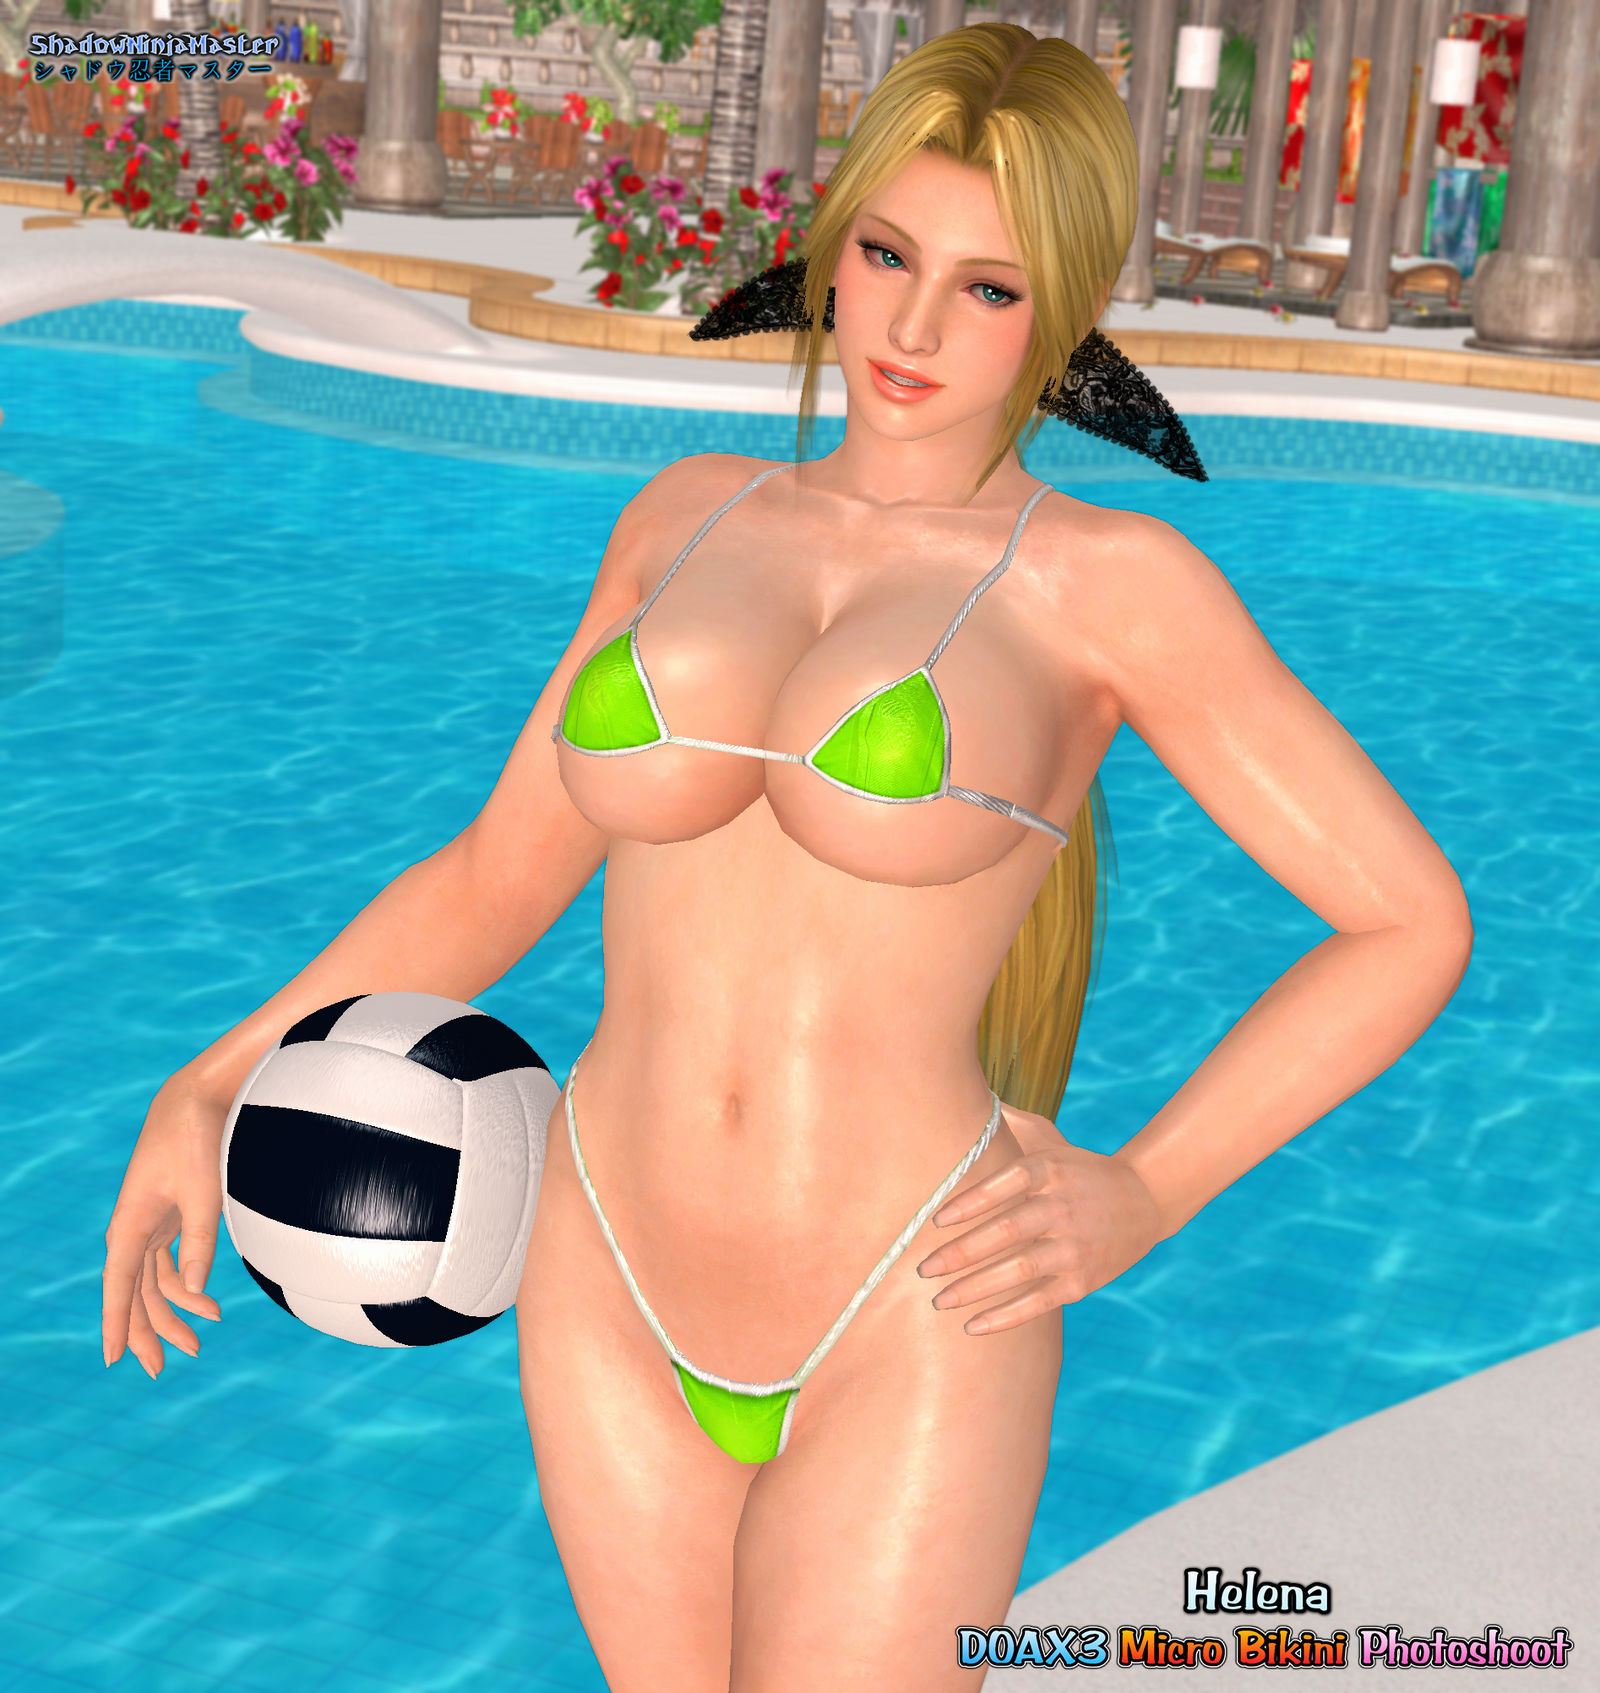 DOAX3 Micro Bikini Photoshoot: Helena